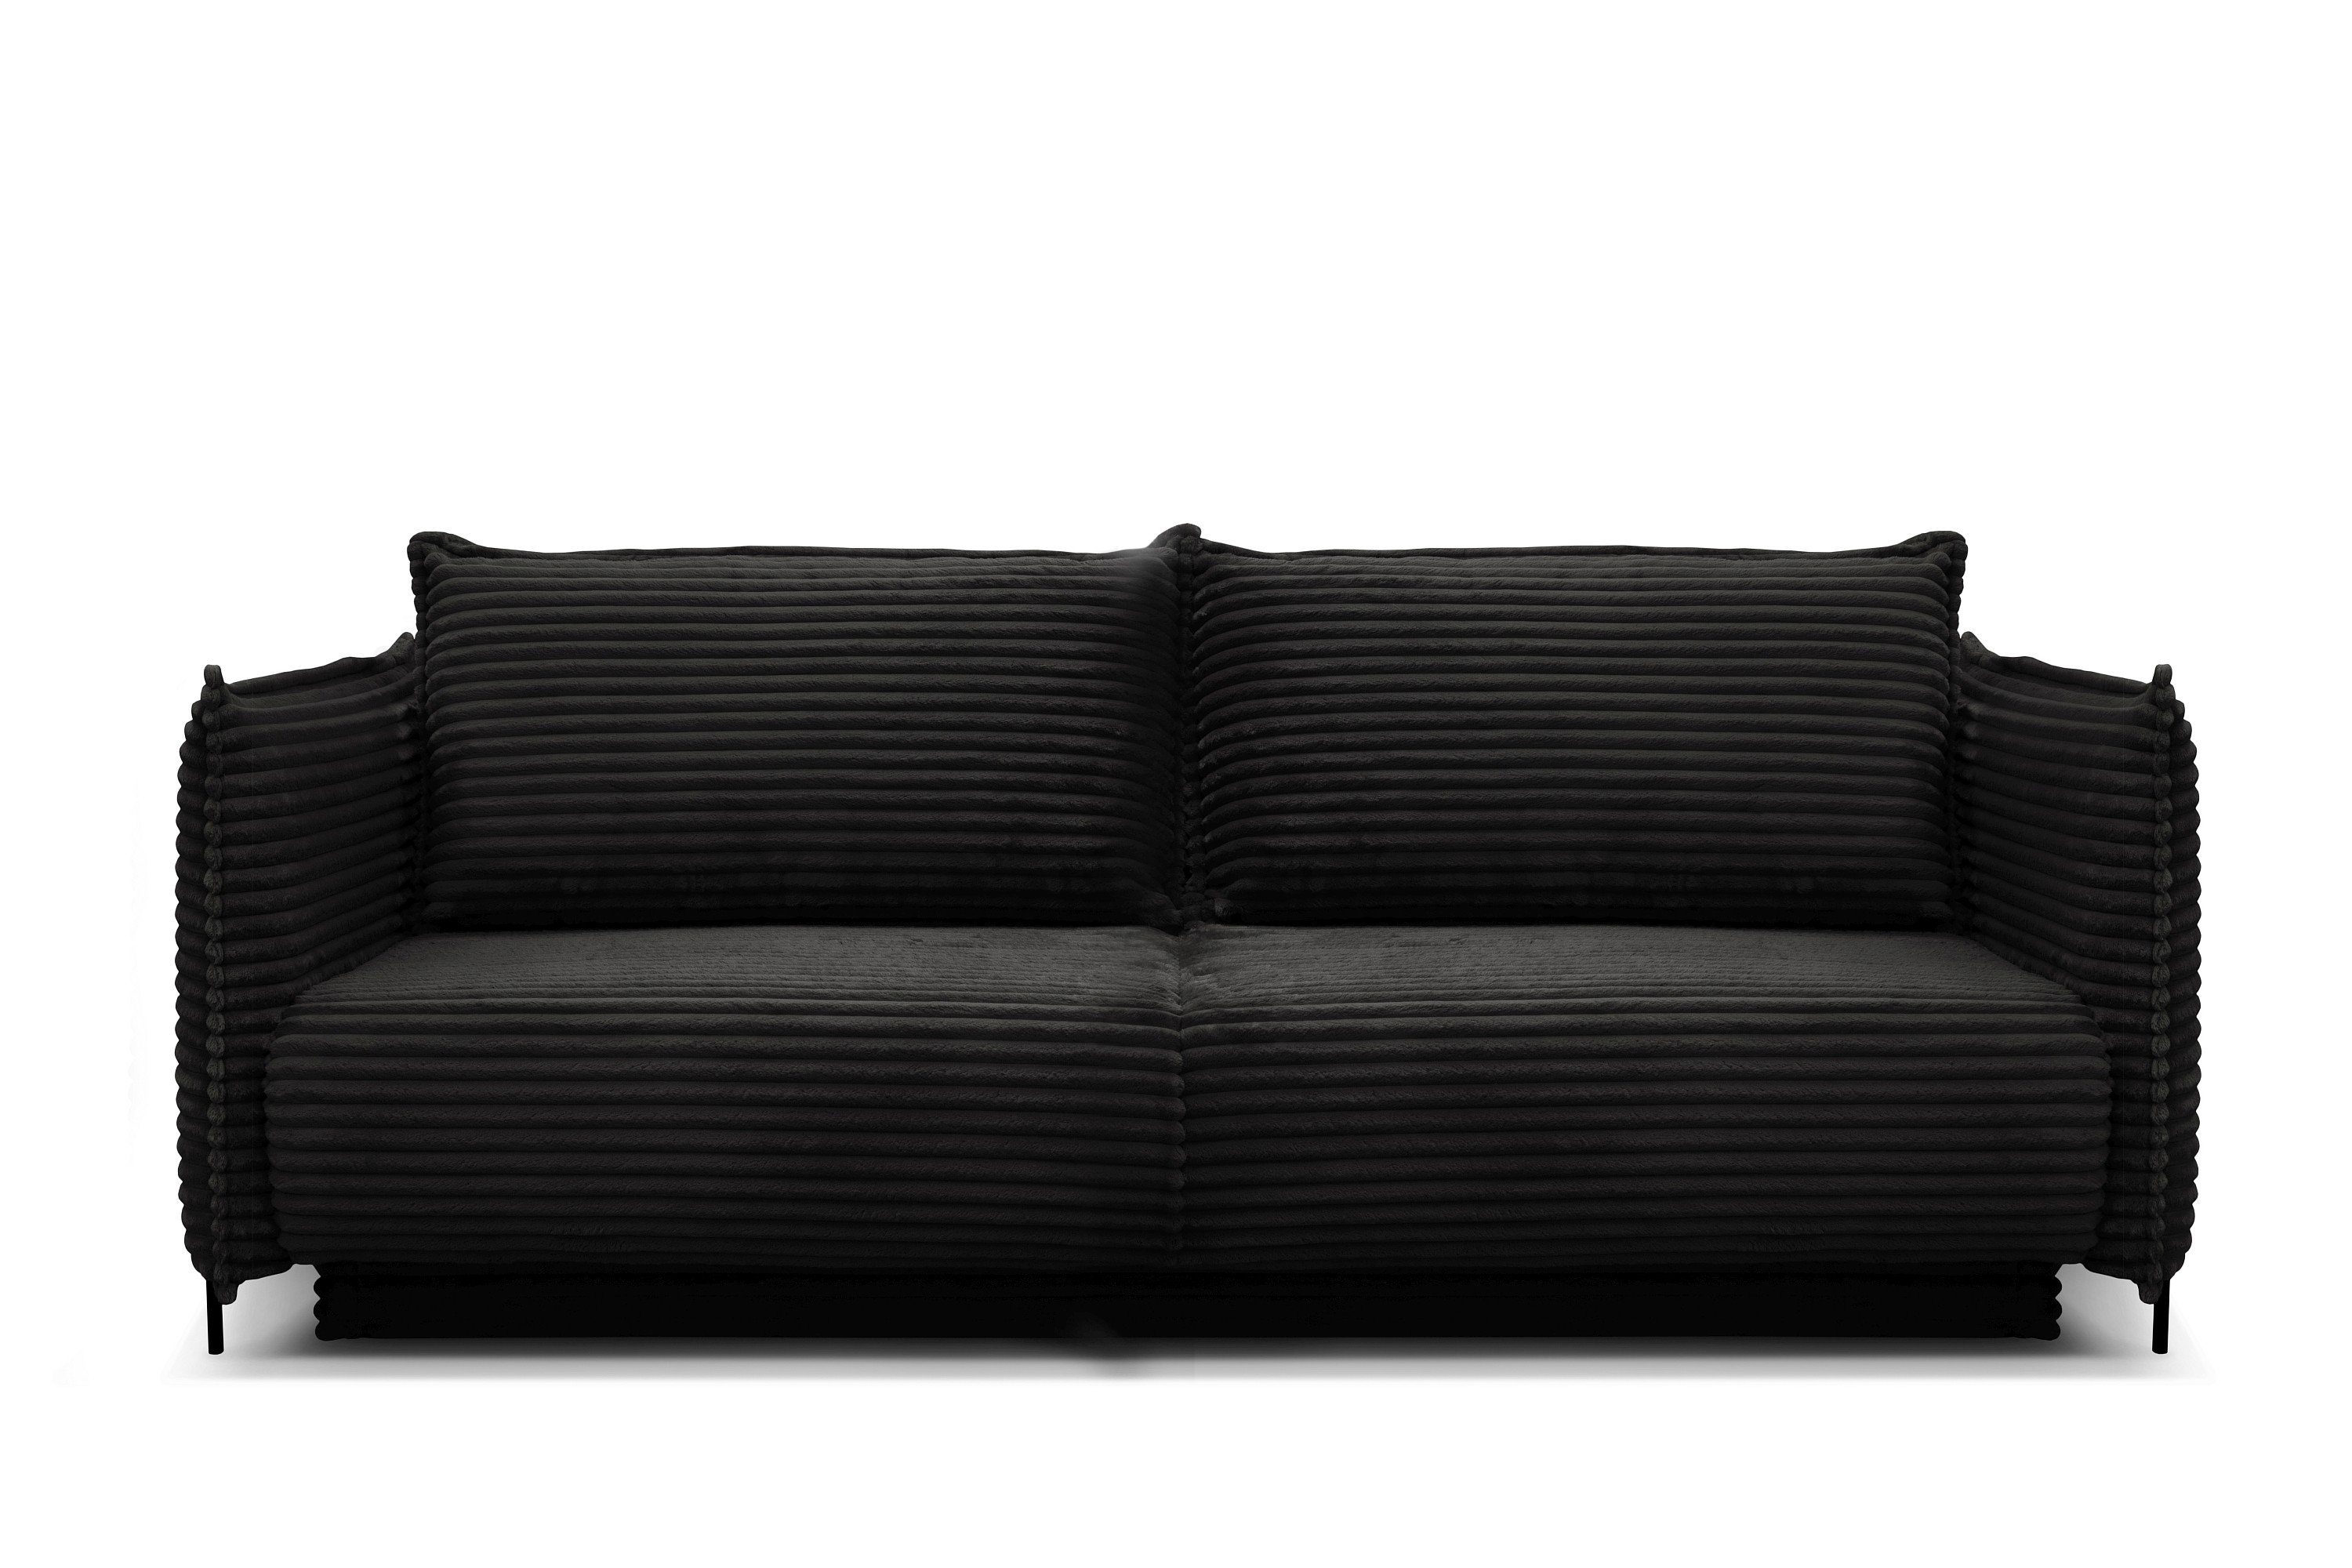 Möbel für Dich Sofa Bettsofa Amalfi mit Cord bezogen sowie mit Bettkasten und Farbauswahl, Cordbezug mega-1-black